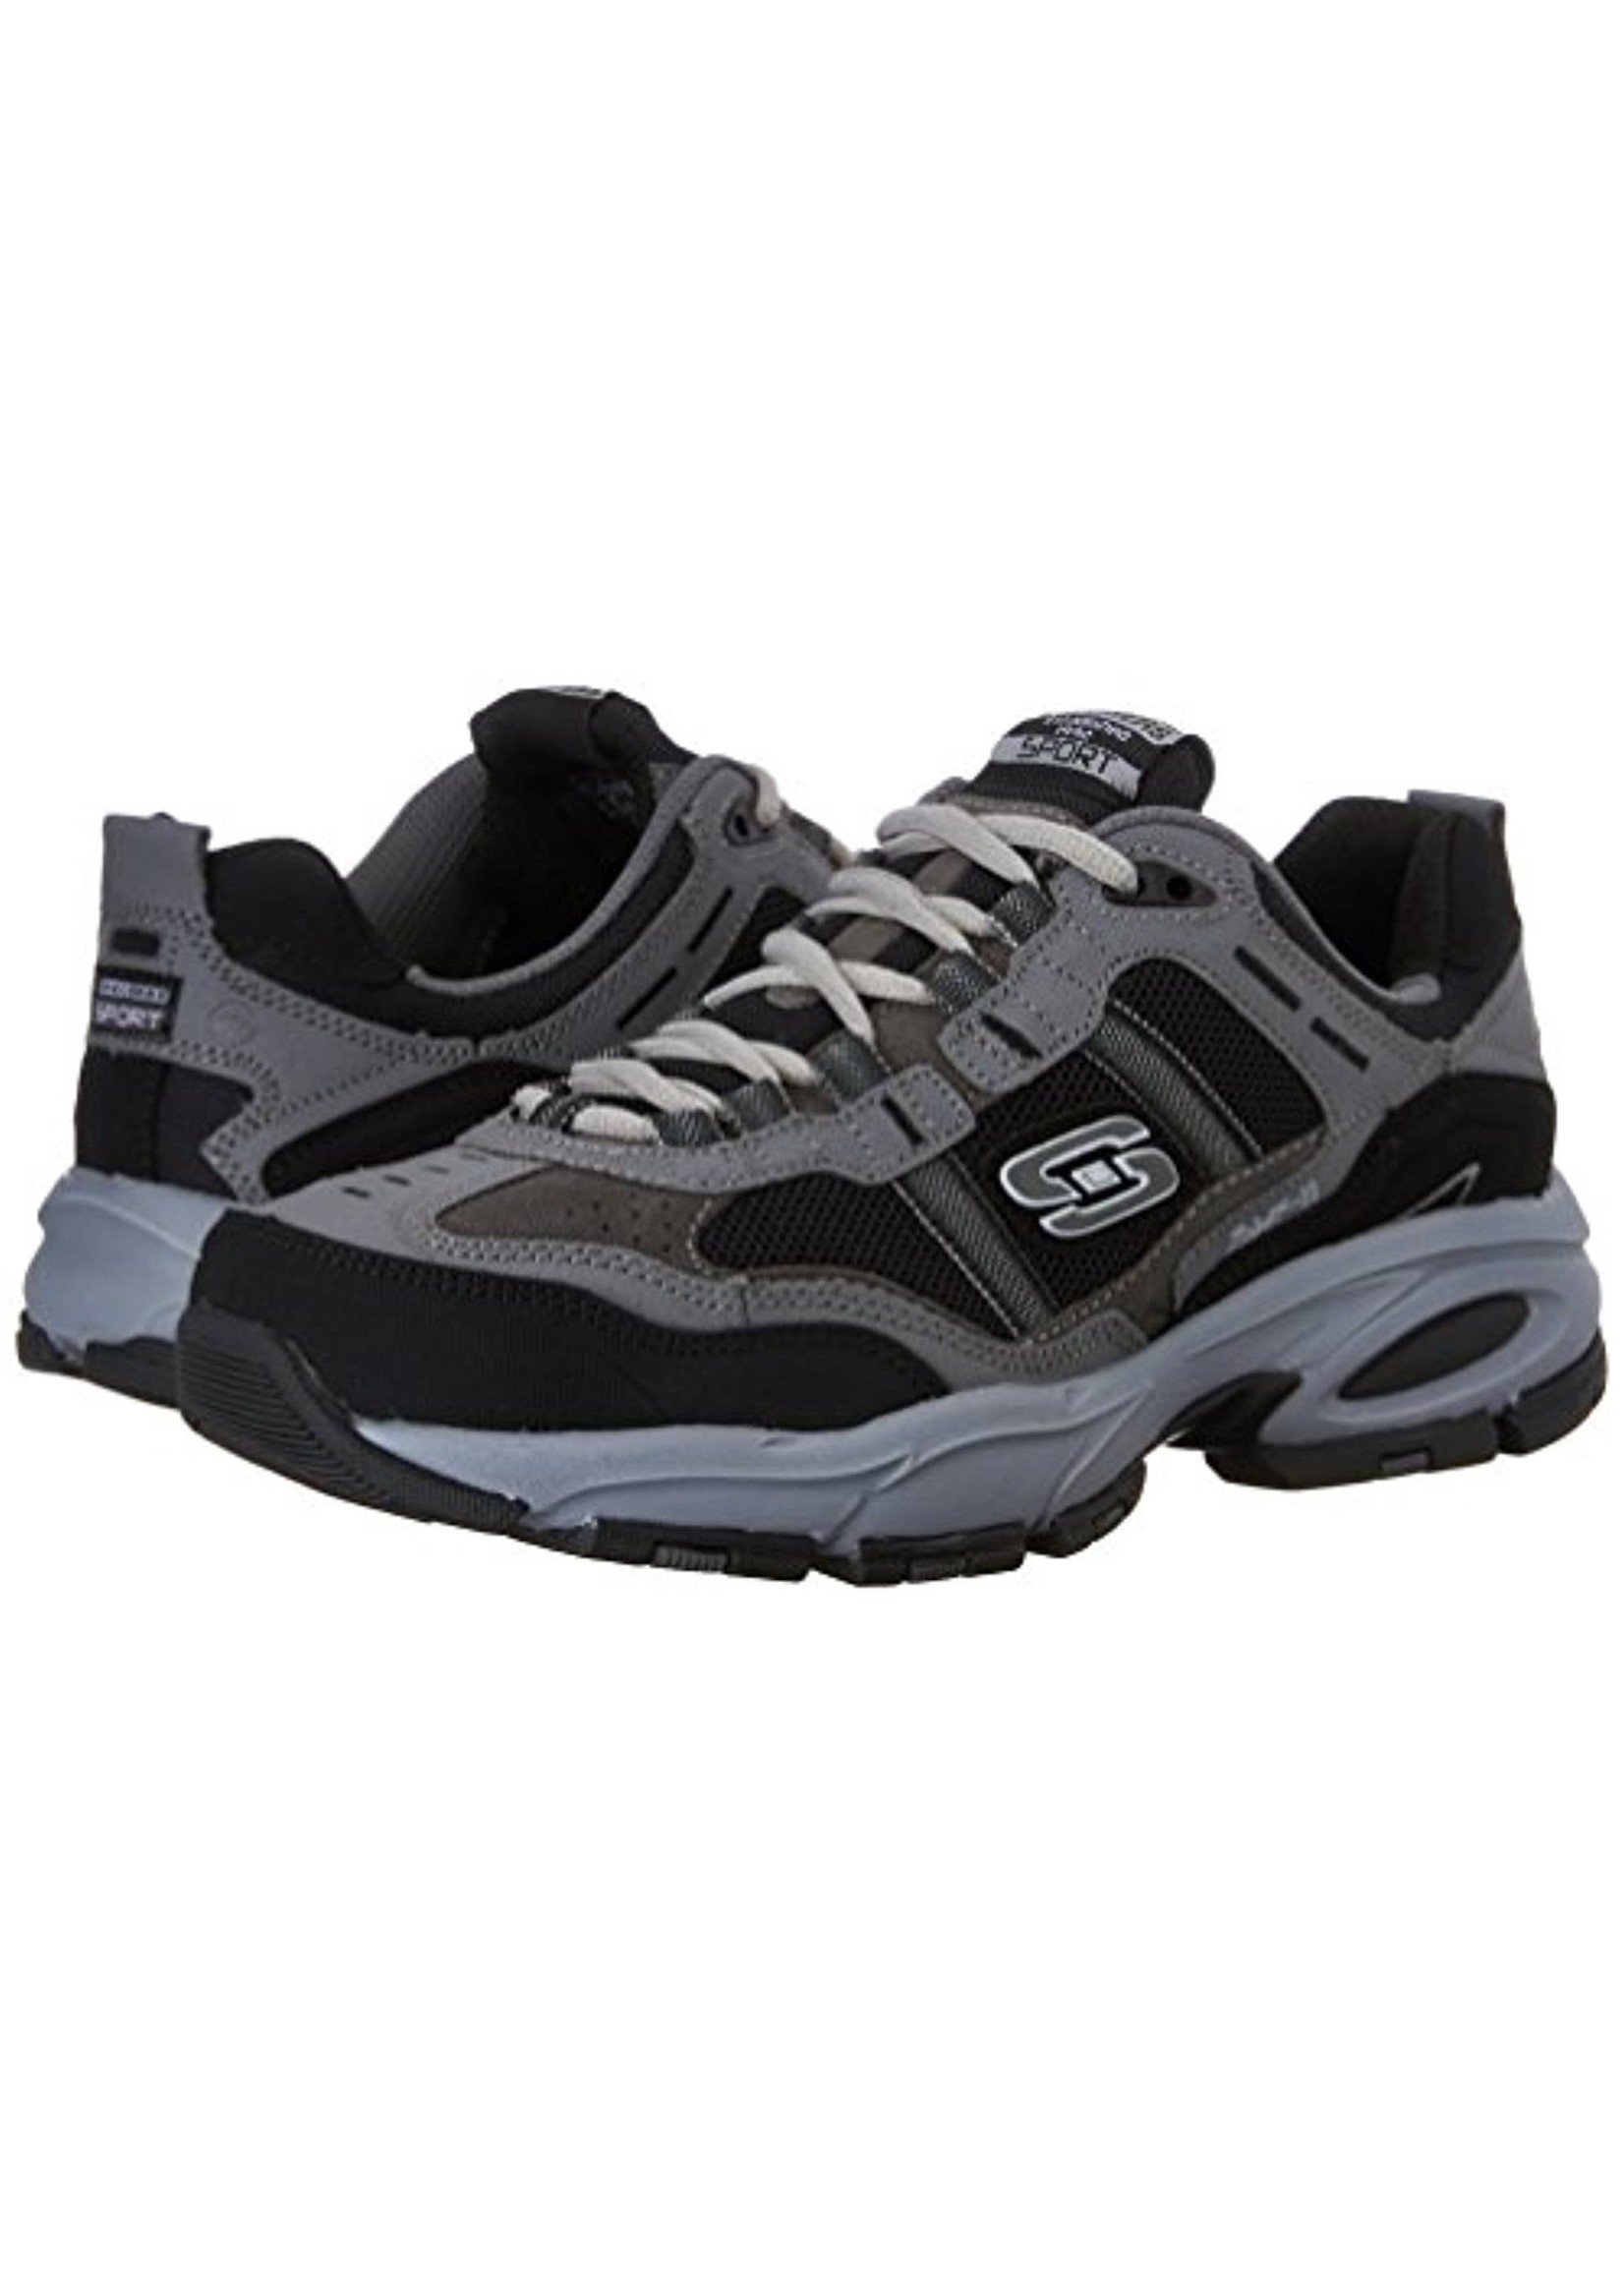 Skechers Vigor 2.0 Trait 51241EW Memory Foam™ Comfort insole Sneakers Wide Fit Charcoal/Black PLUS